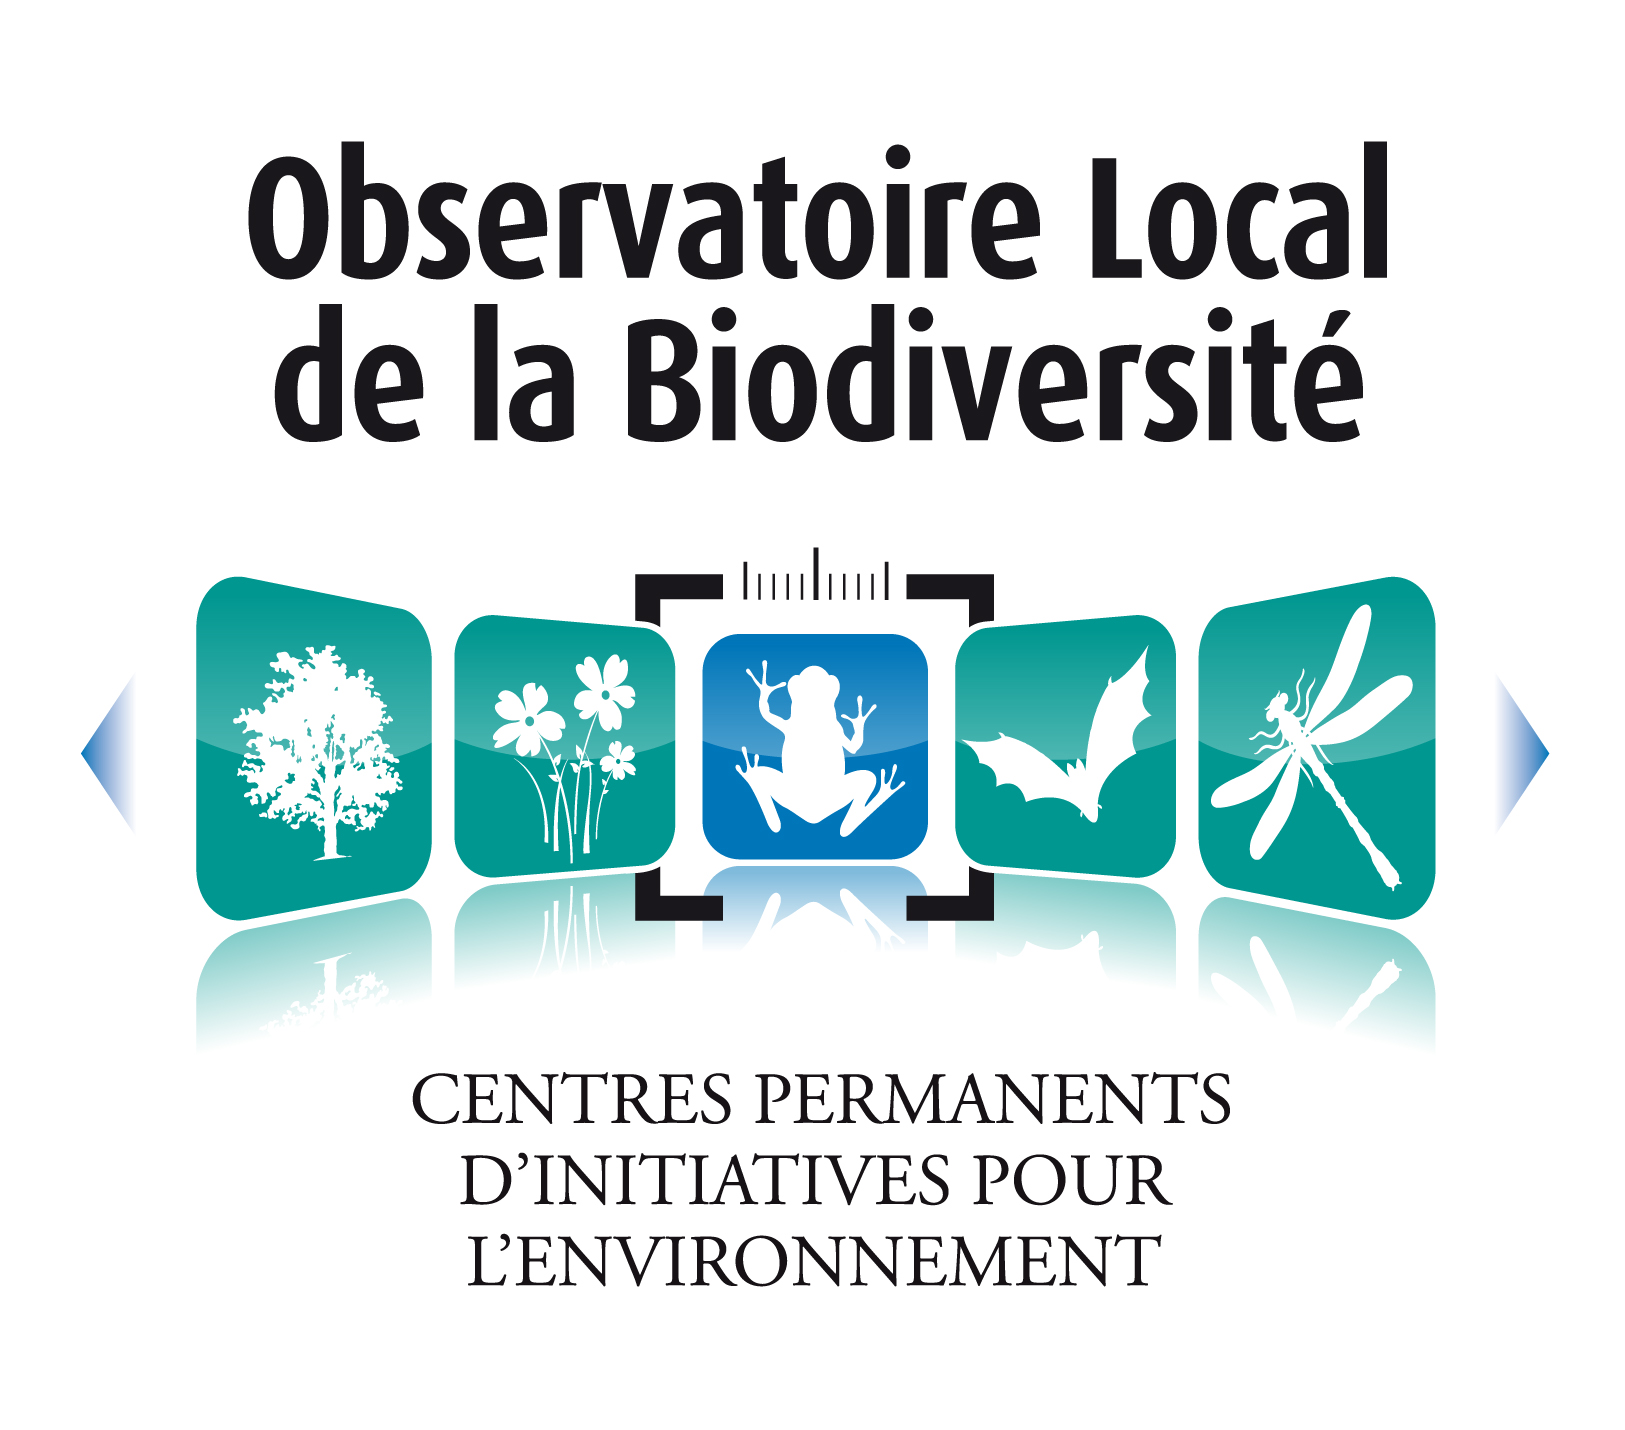 Observatoire Local de la Biodiversité